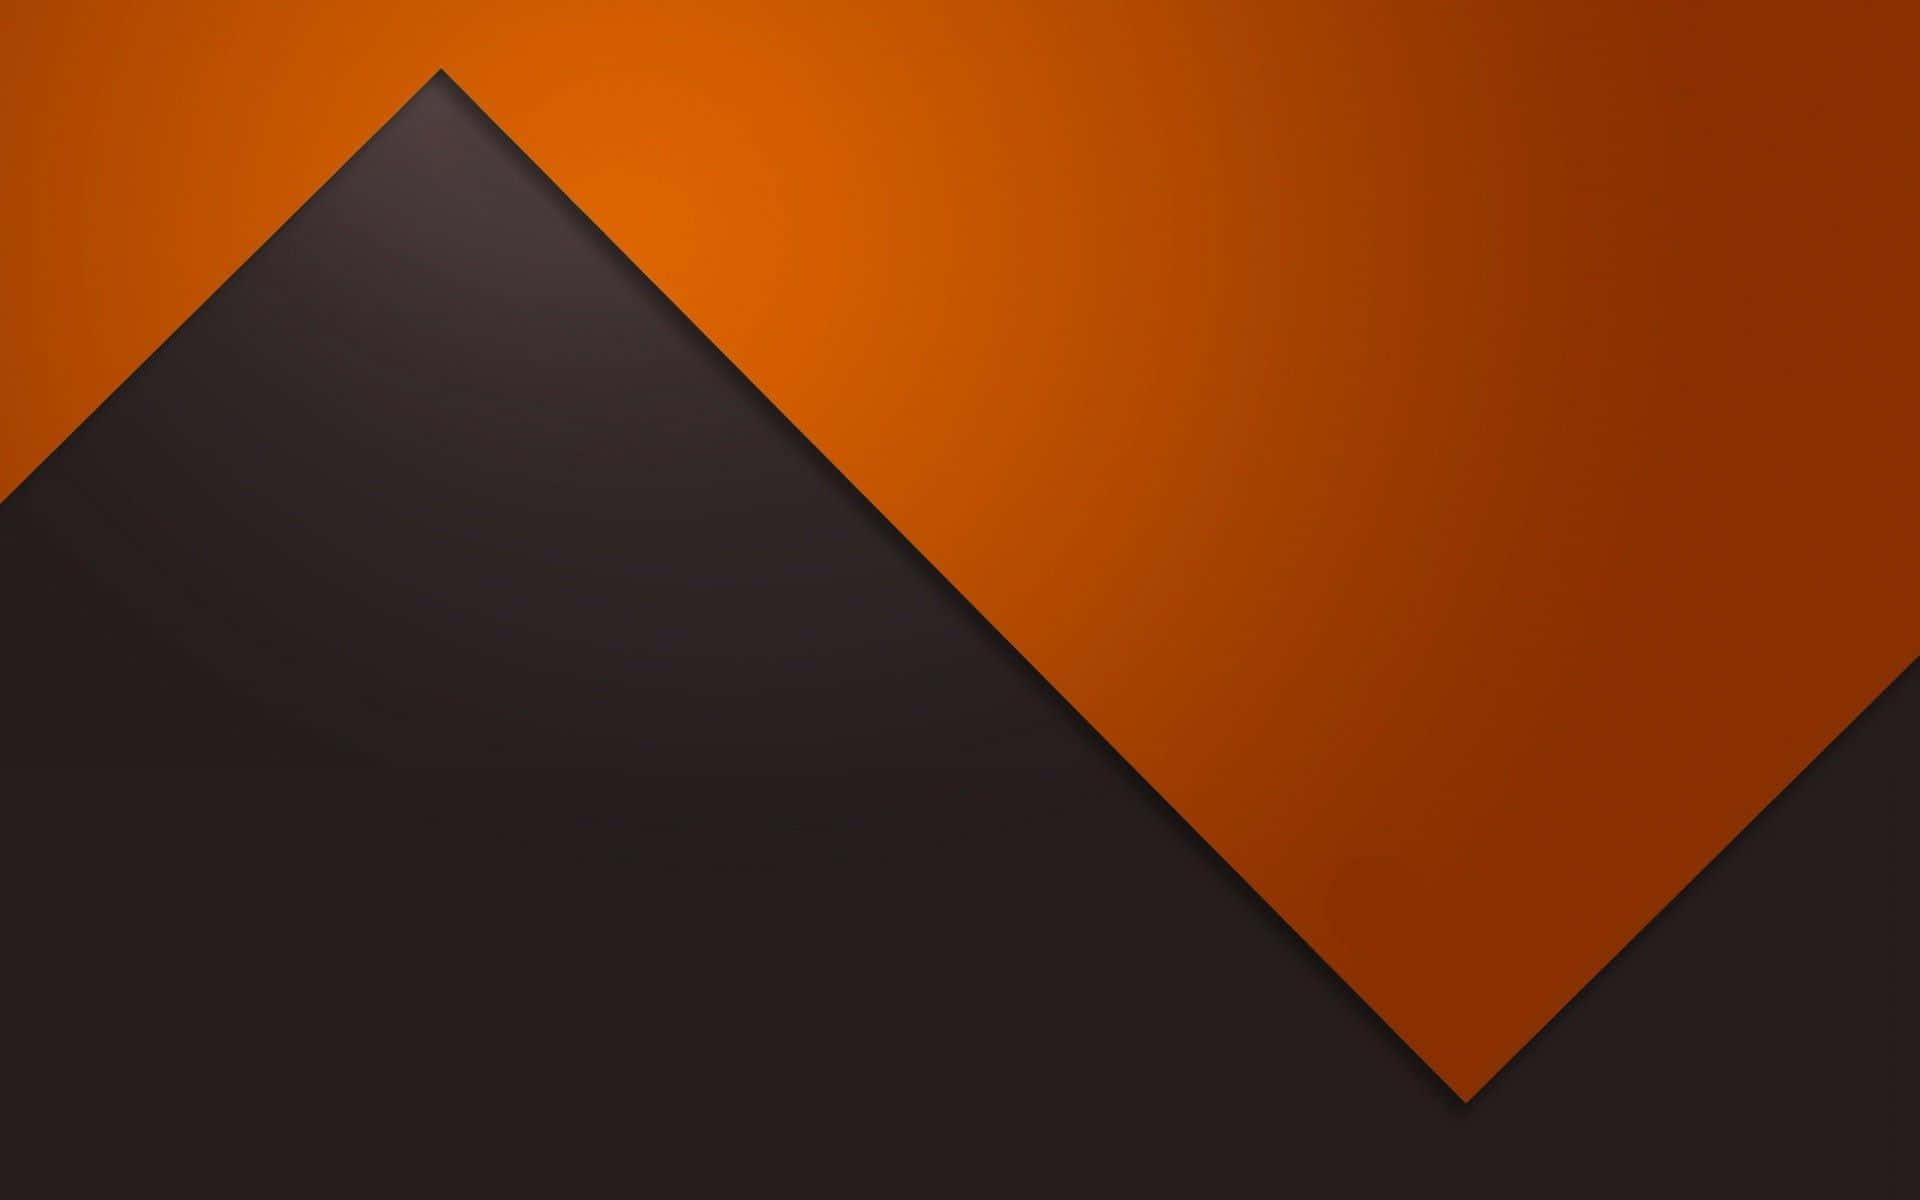 Dark orange wave design on a gradient background